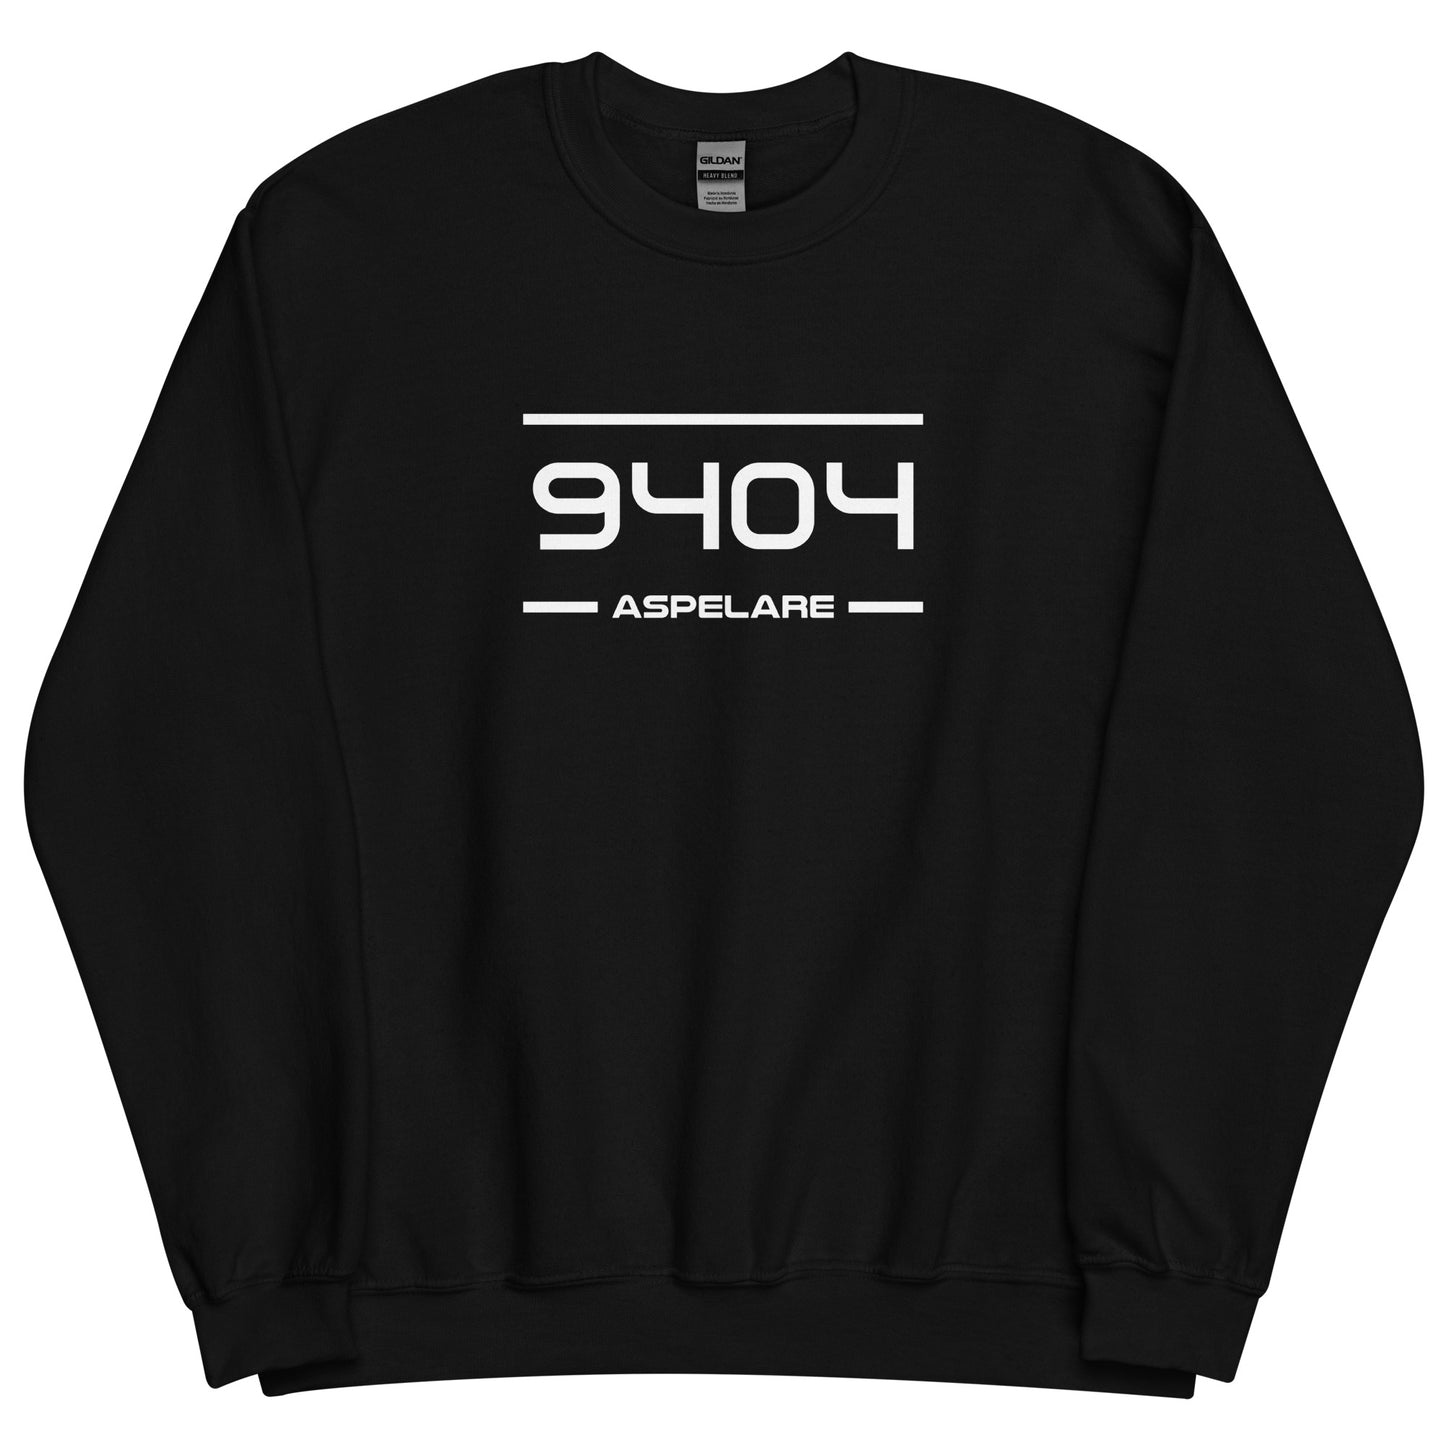 Sweater - 9404 - Aspelare (M/V)